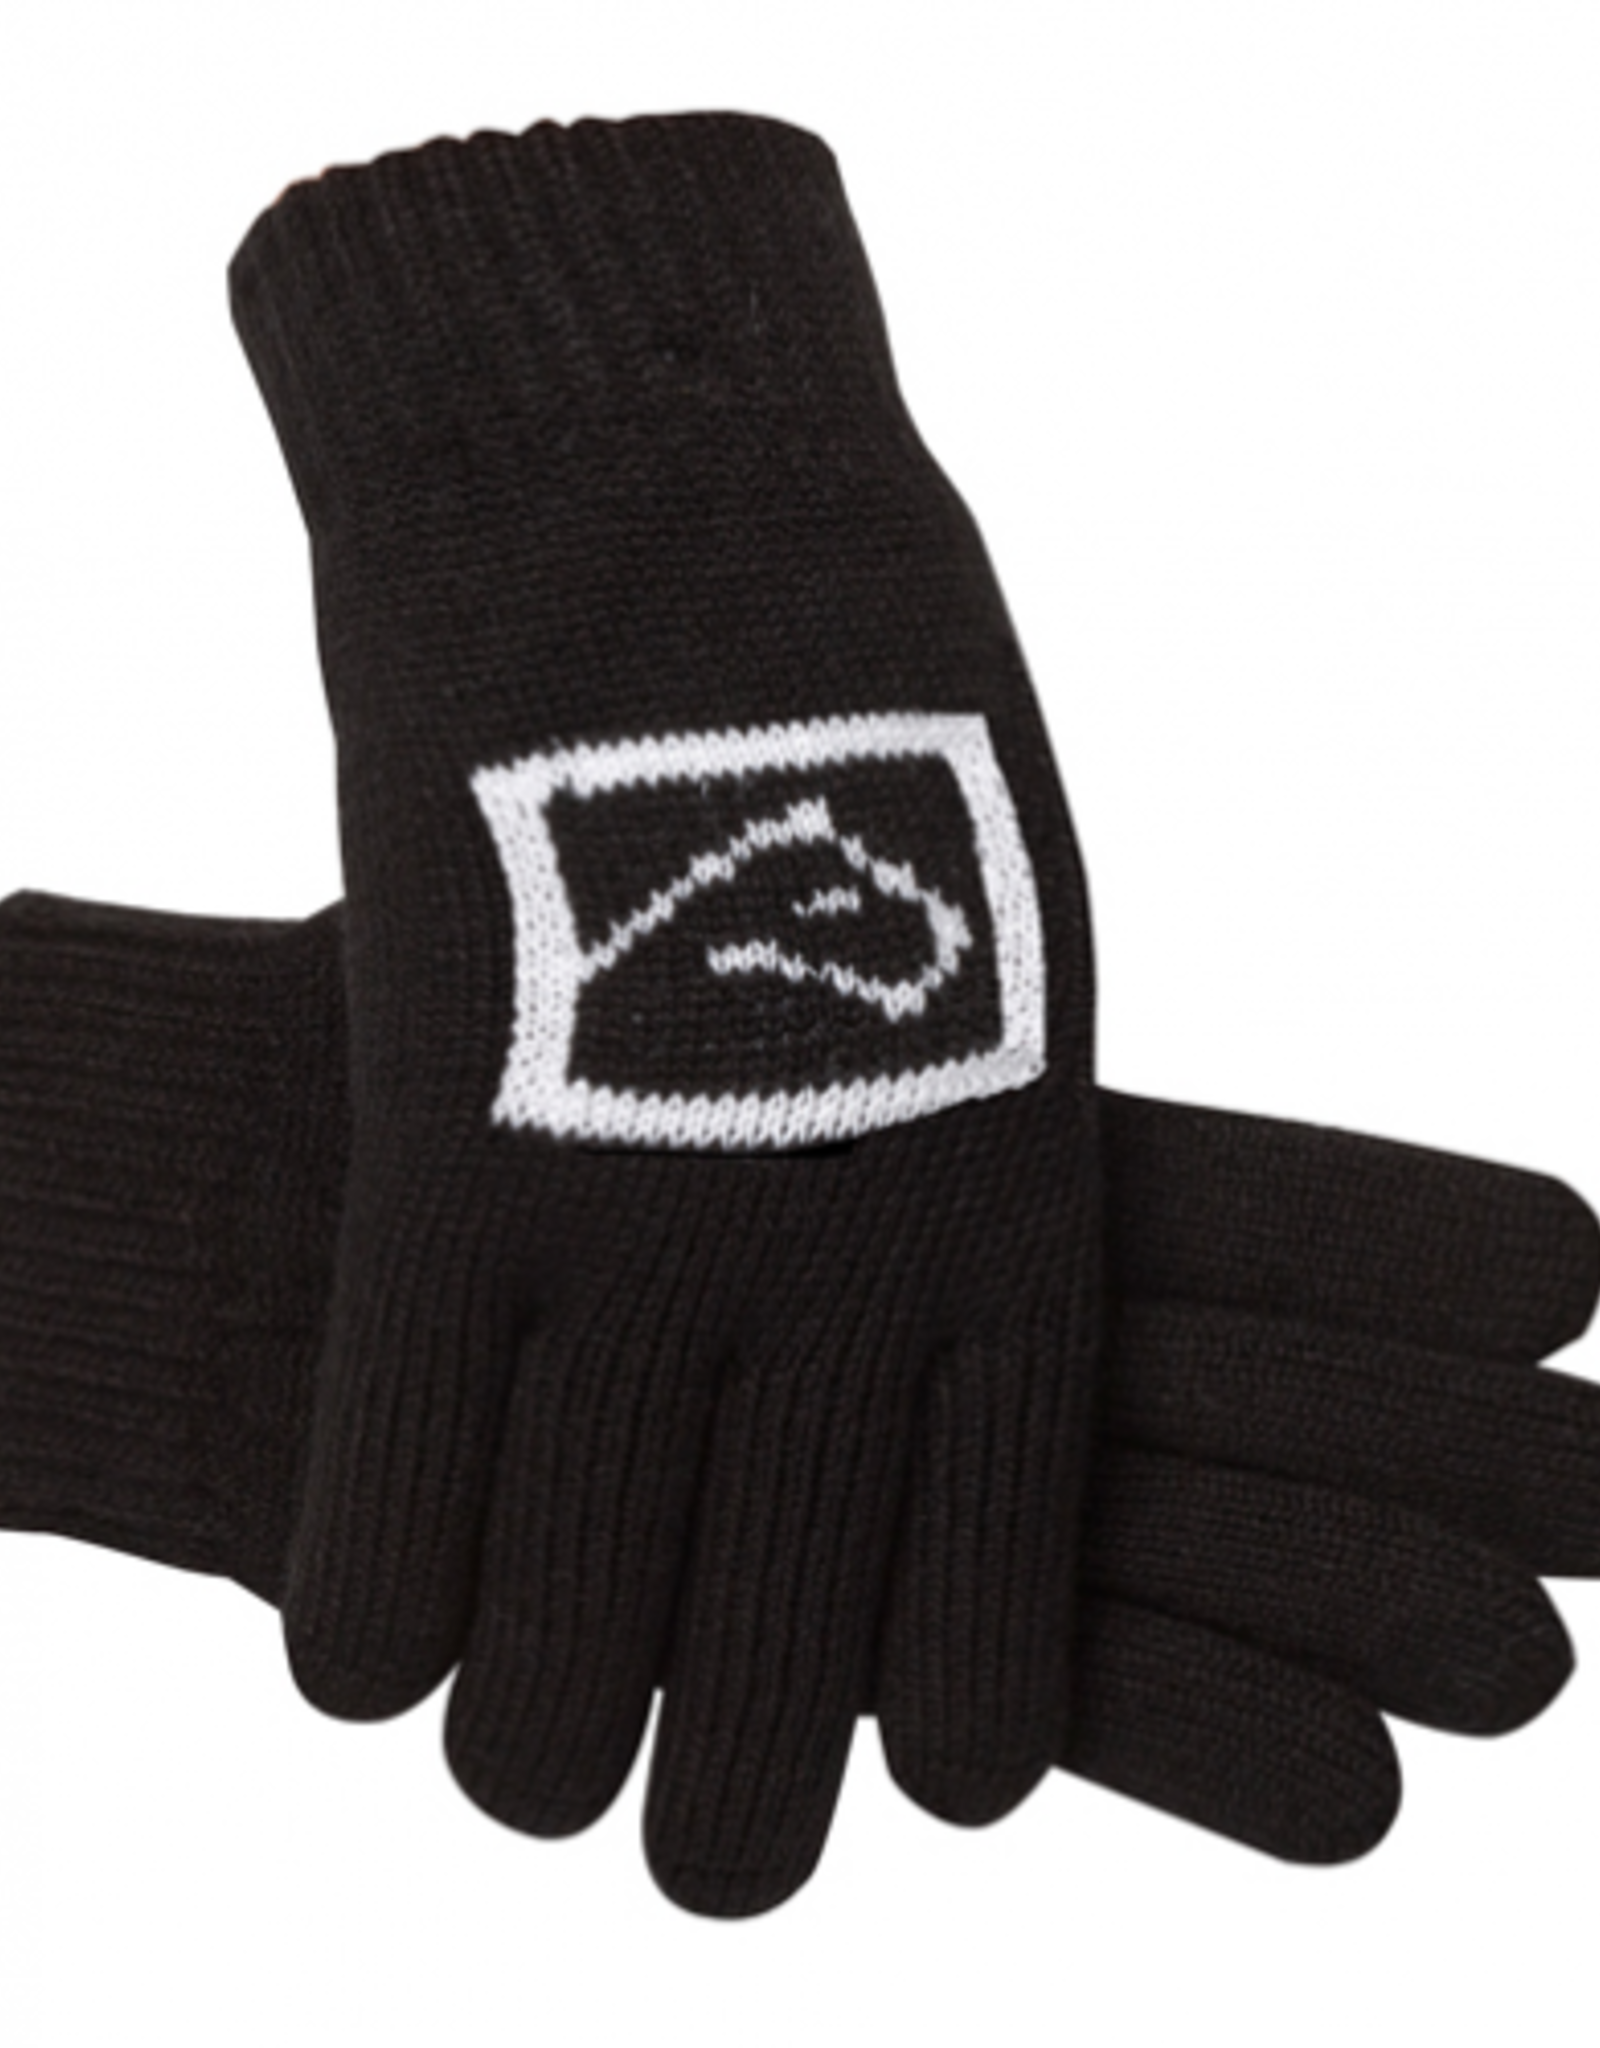 SSG Ladies One Size Acrylic Knit Glove